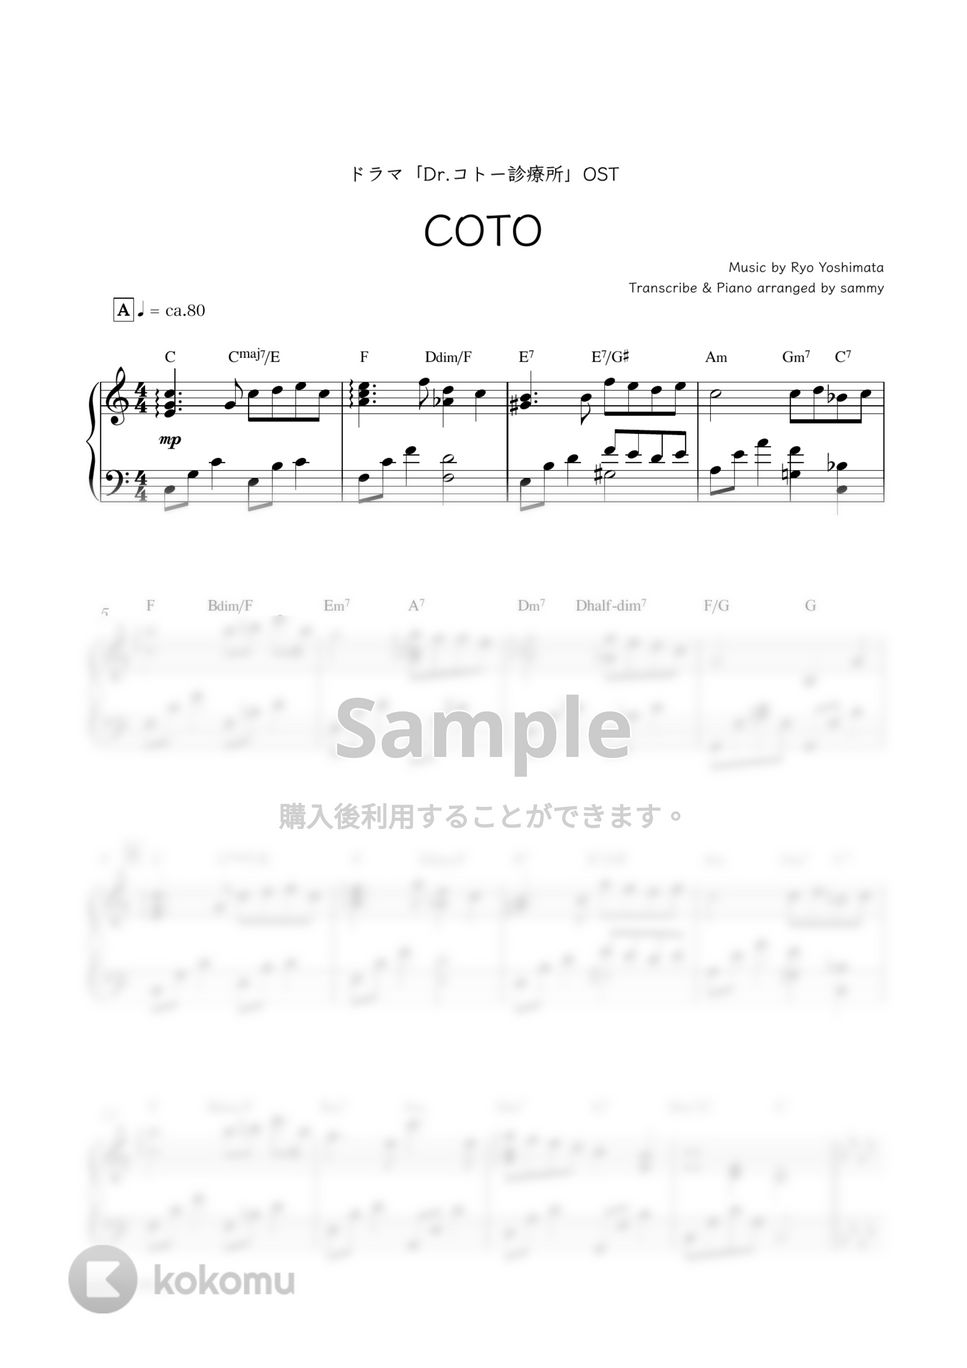 ドラマ『Dr.コトー診療所』OST - COTO by sammy